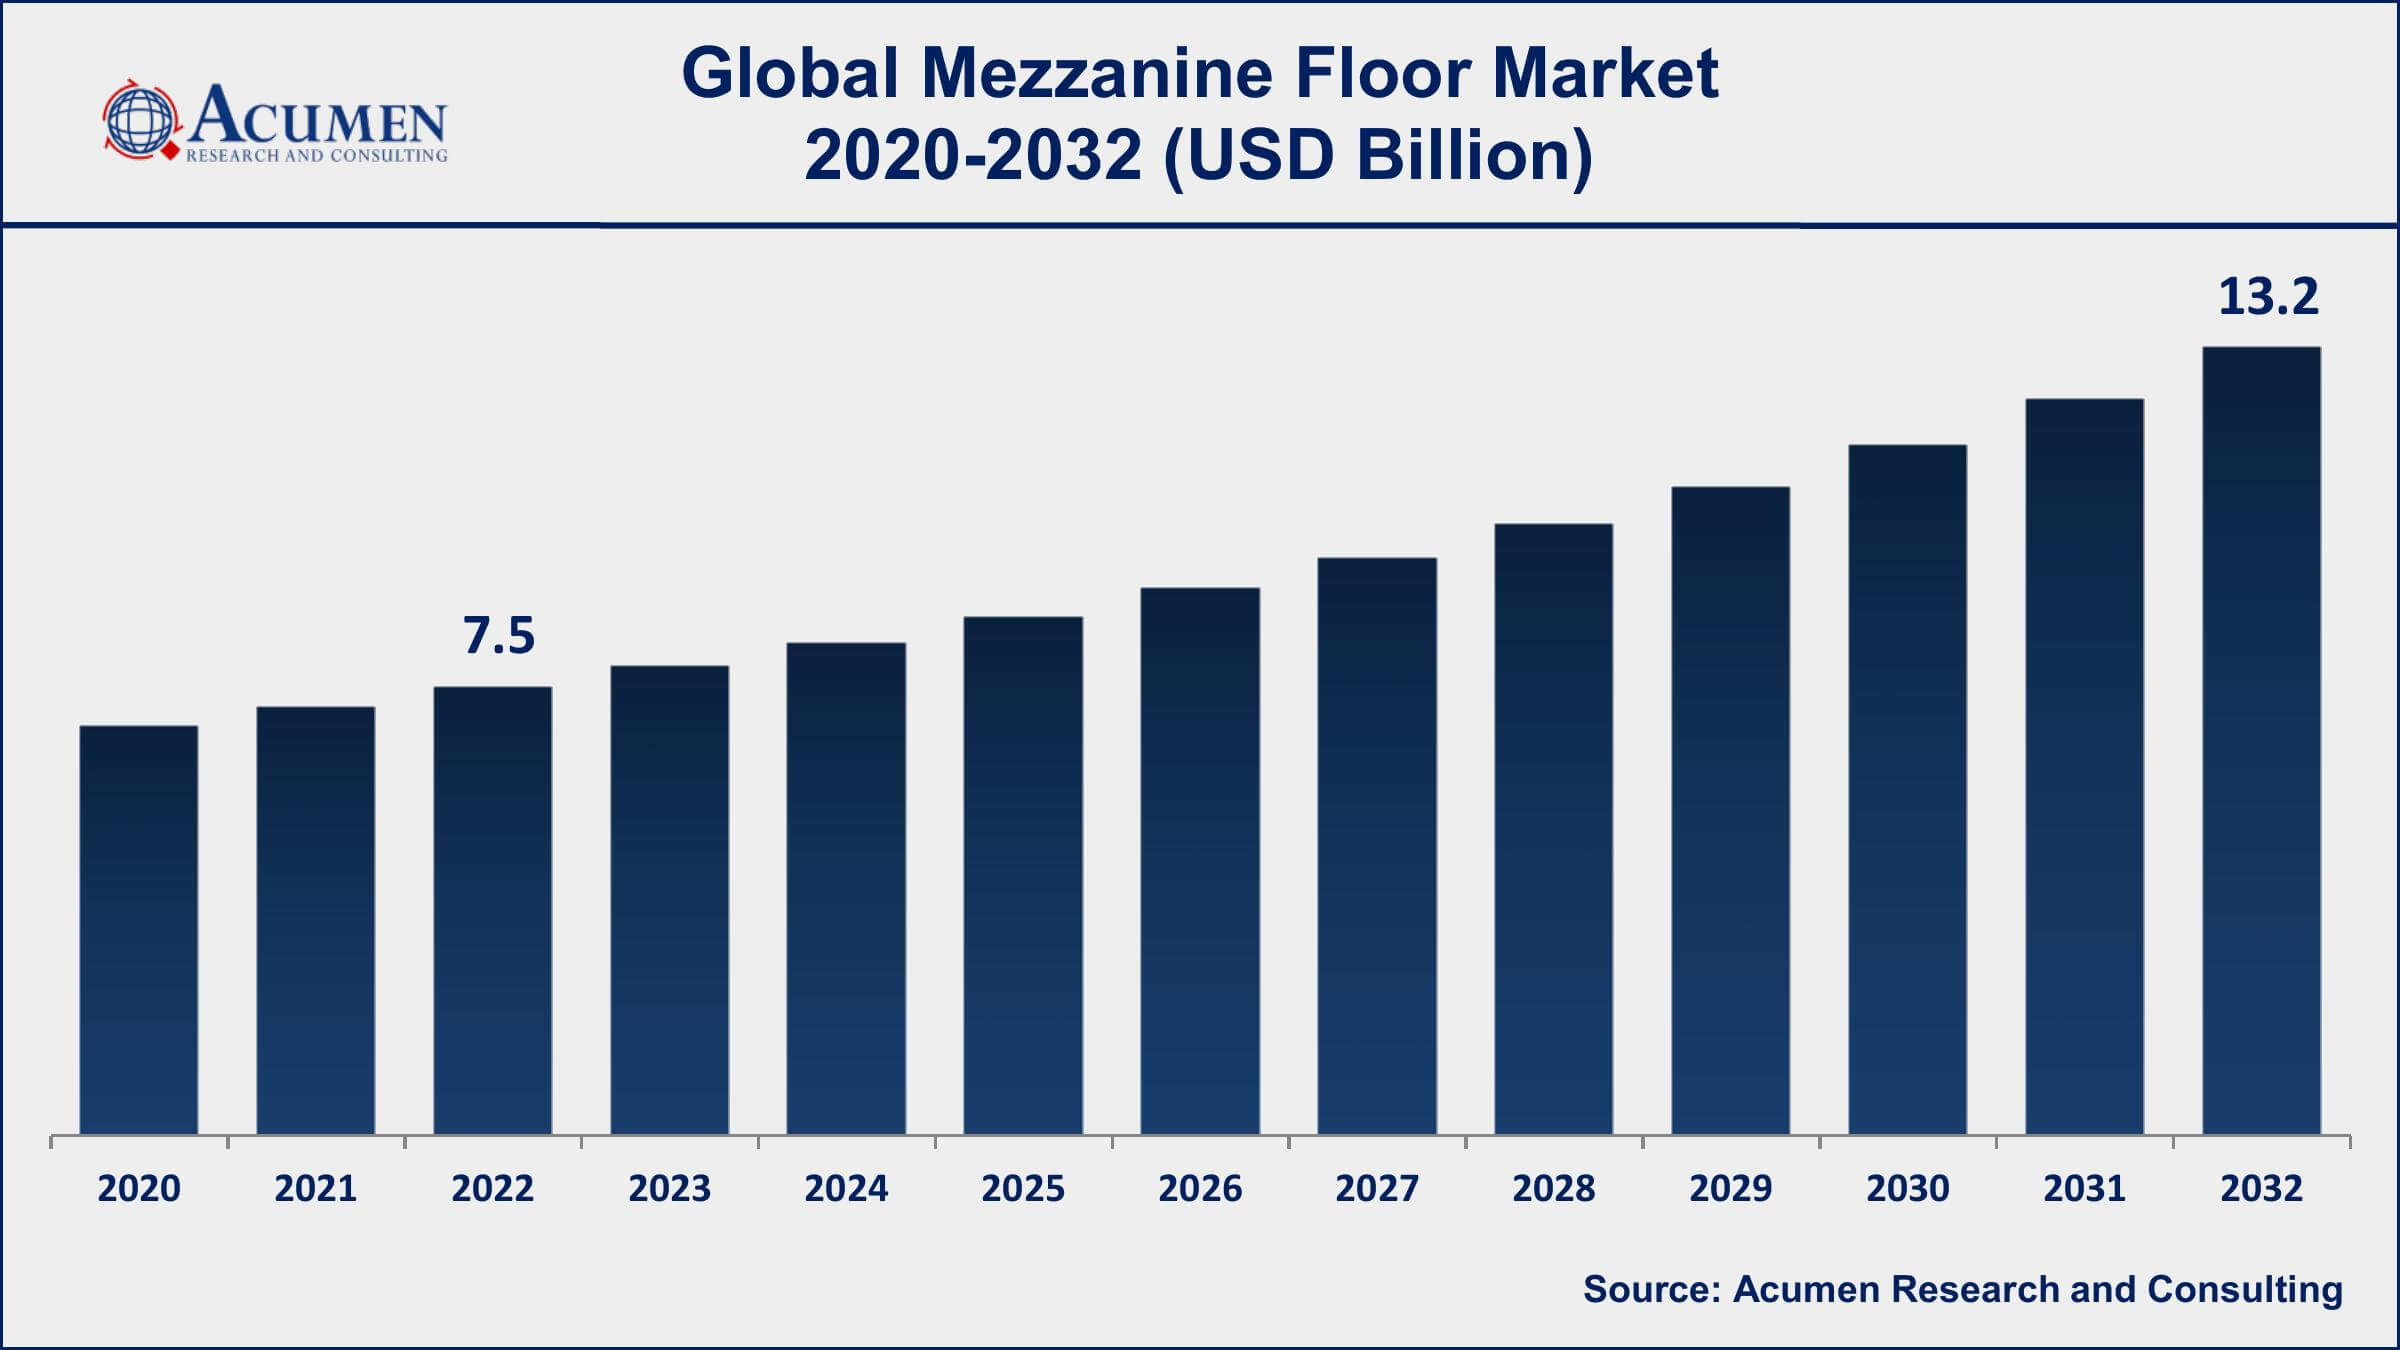 Mezzanine Floor Market Drivers